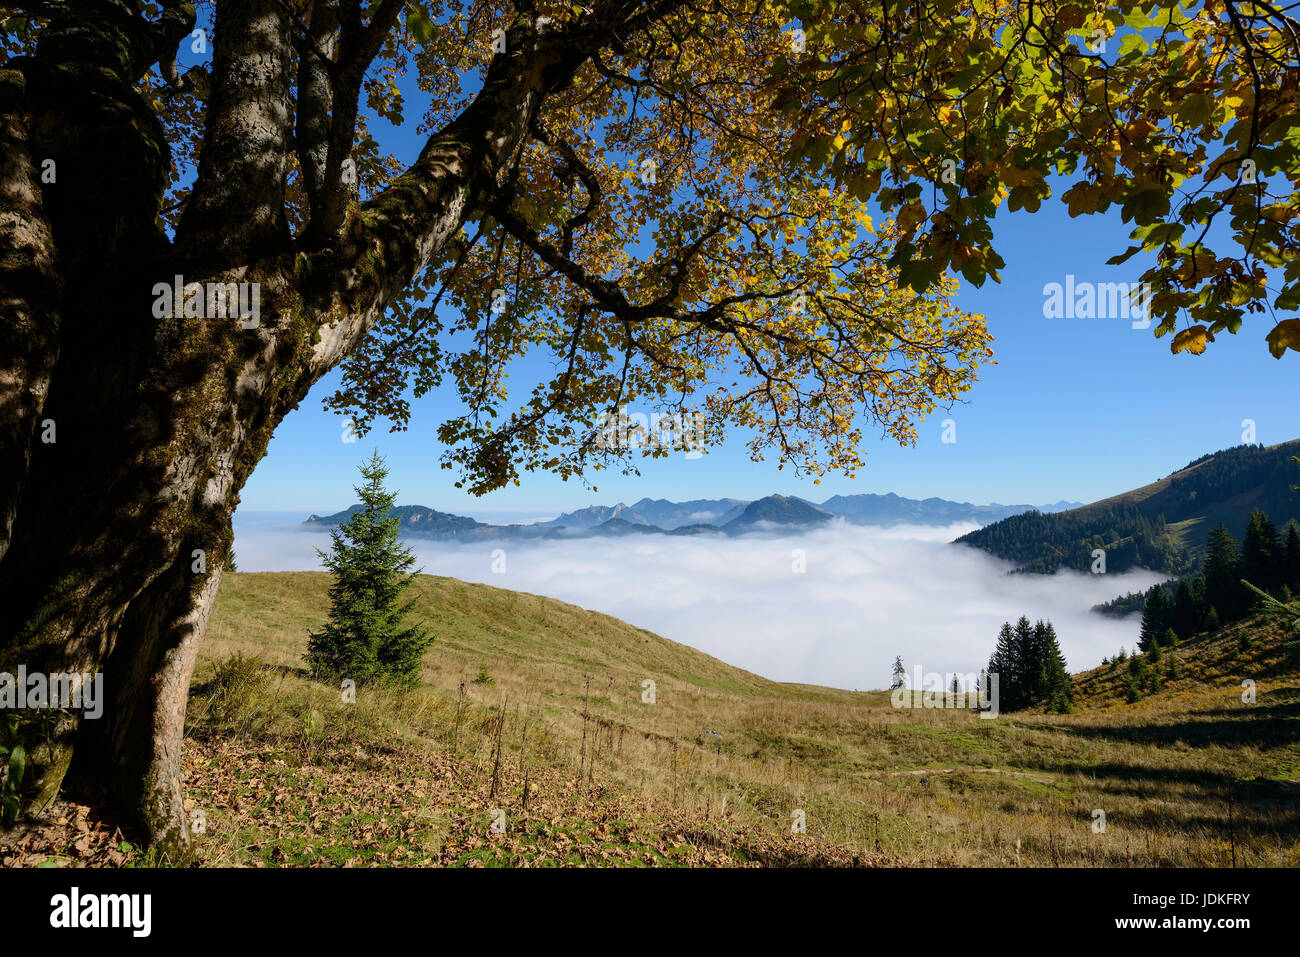 Sycamore con coloración de otoño en las montañas, mit Berg-Ahorn Herbstfärbung im Gebirge Foto de stock